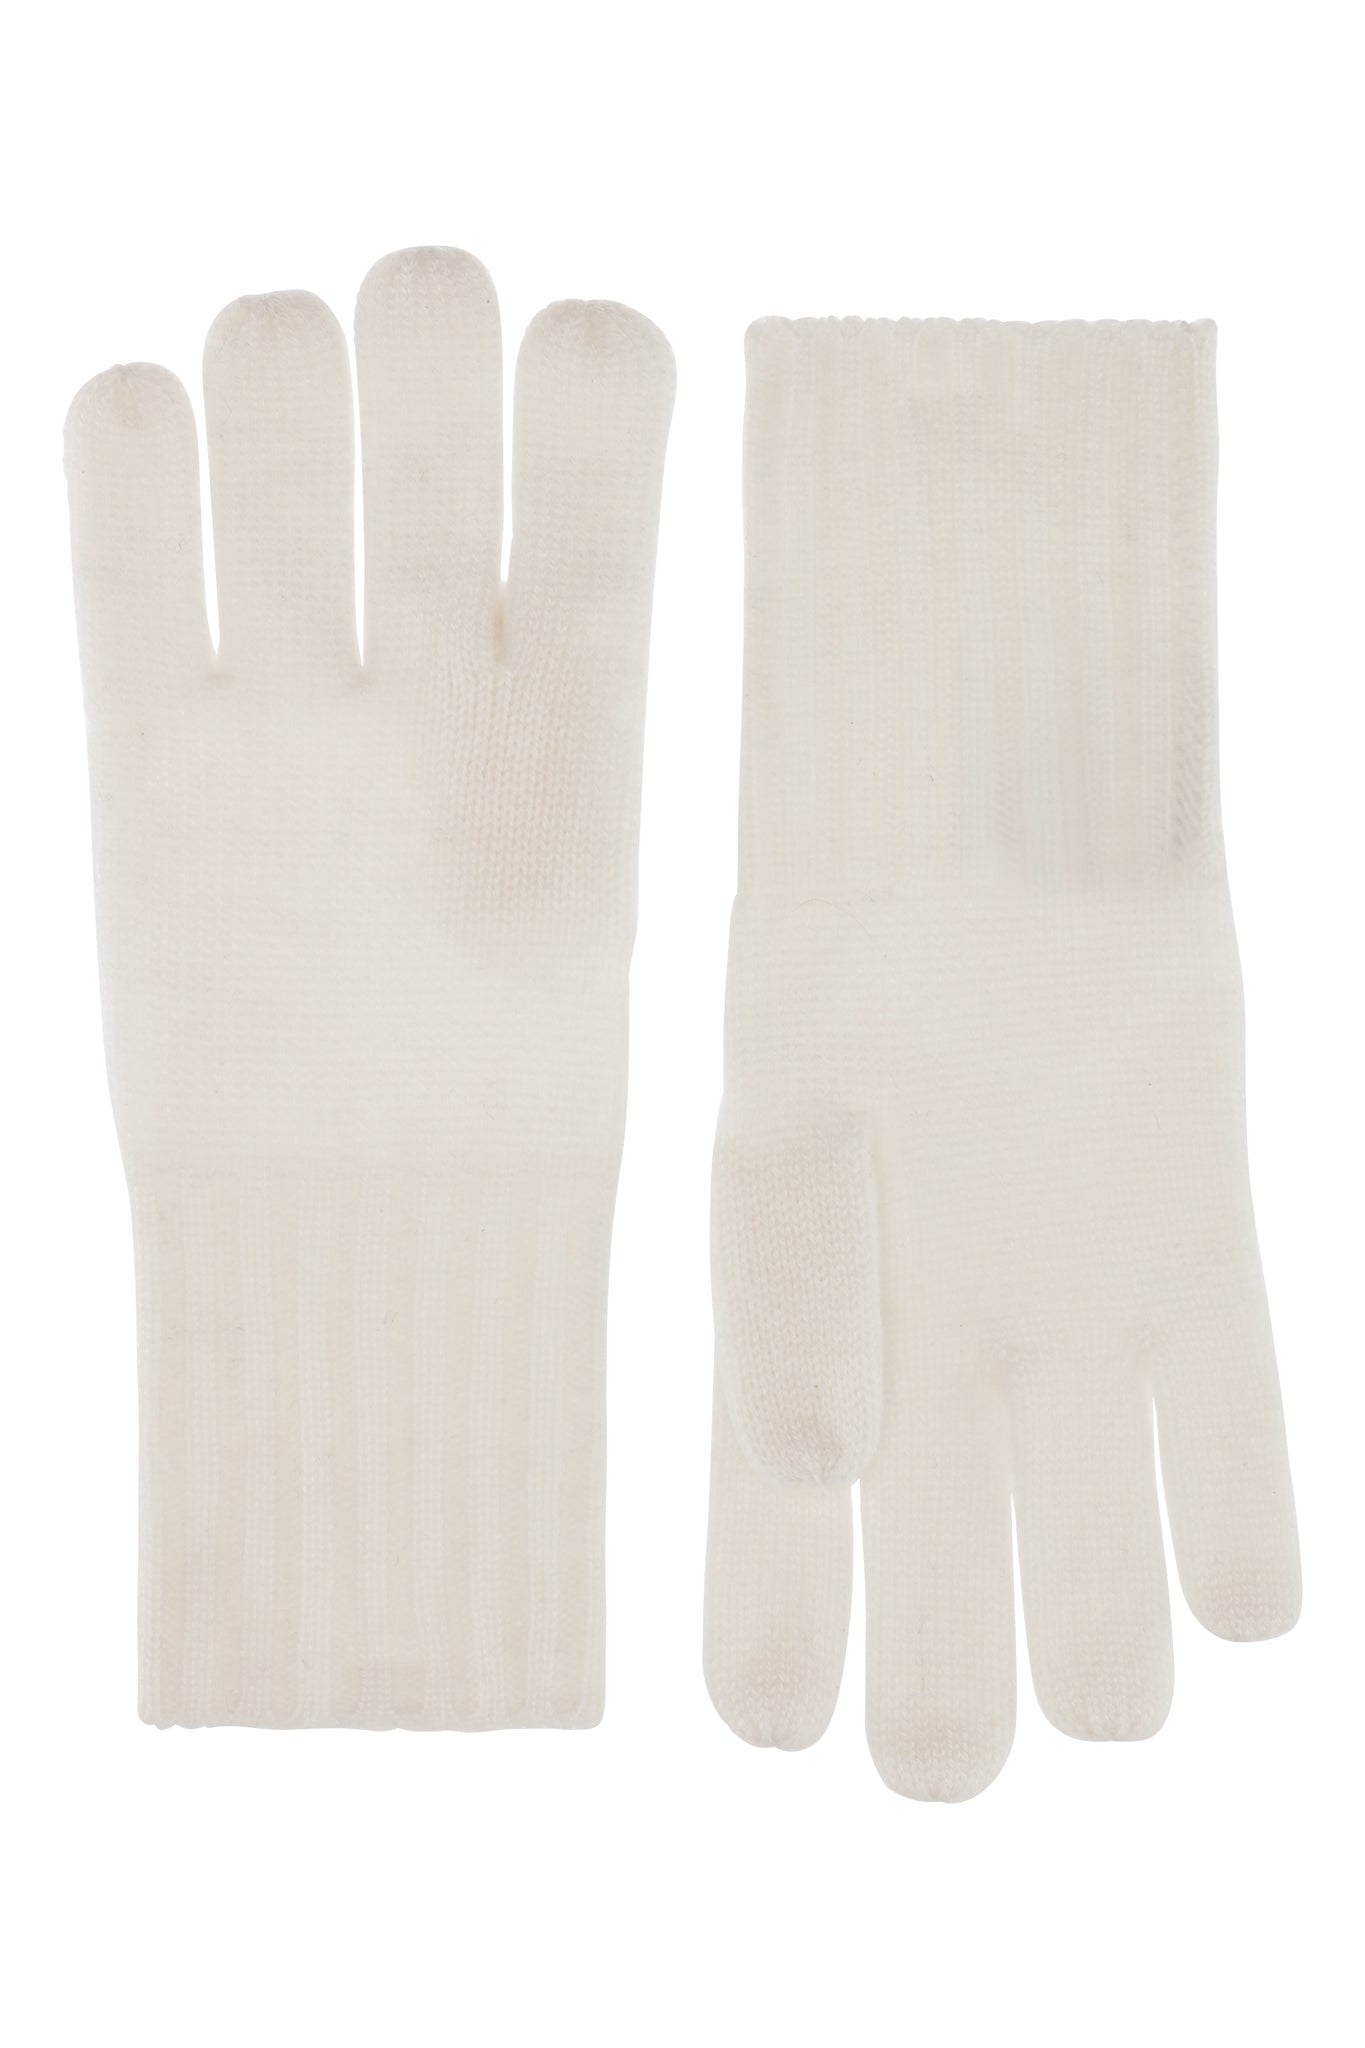 Robin - Handsker i strikket cashmere - Hvide